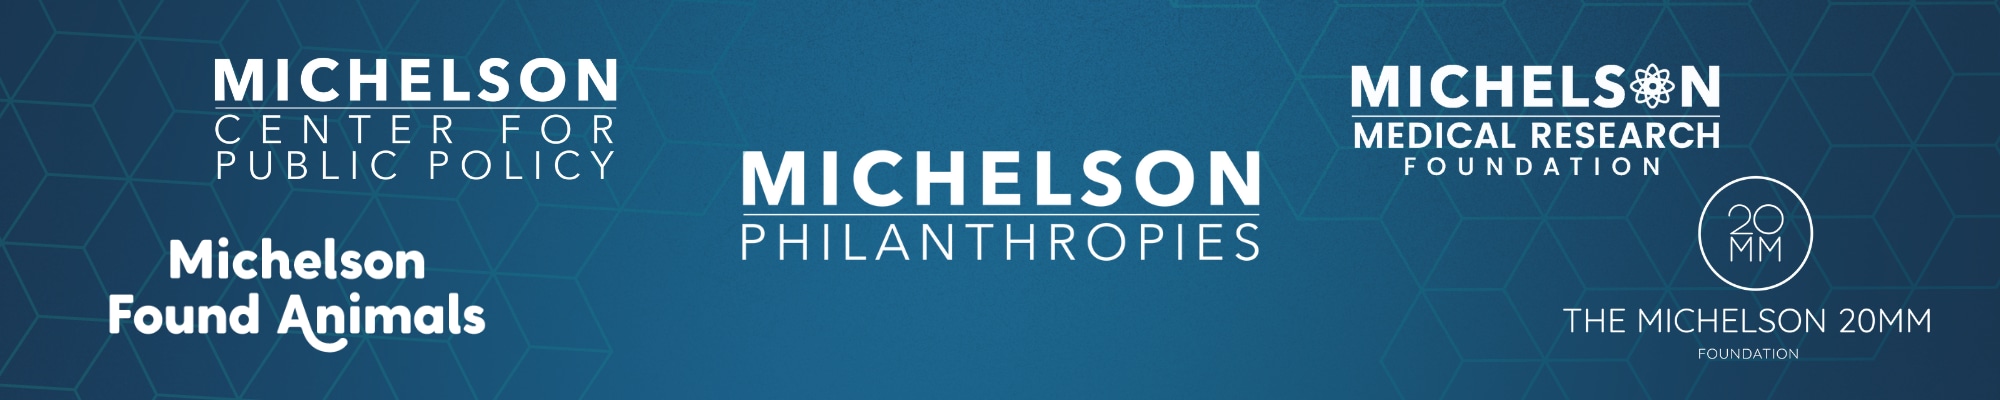 Michelson Philanthropies Header Image